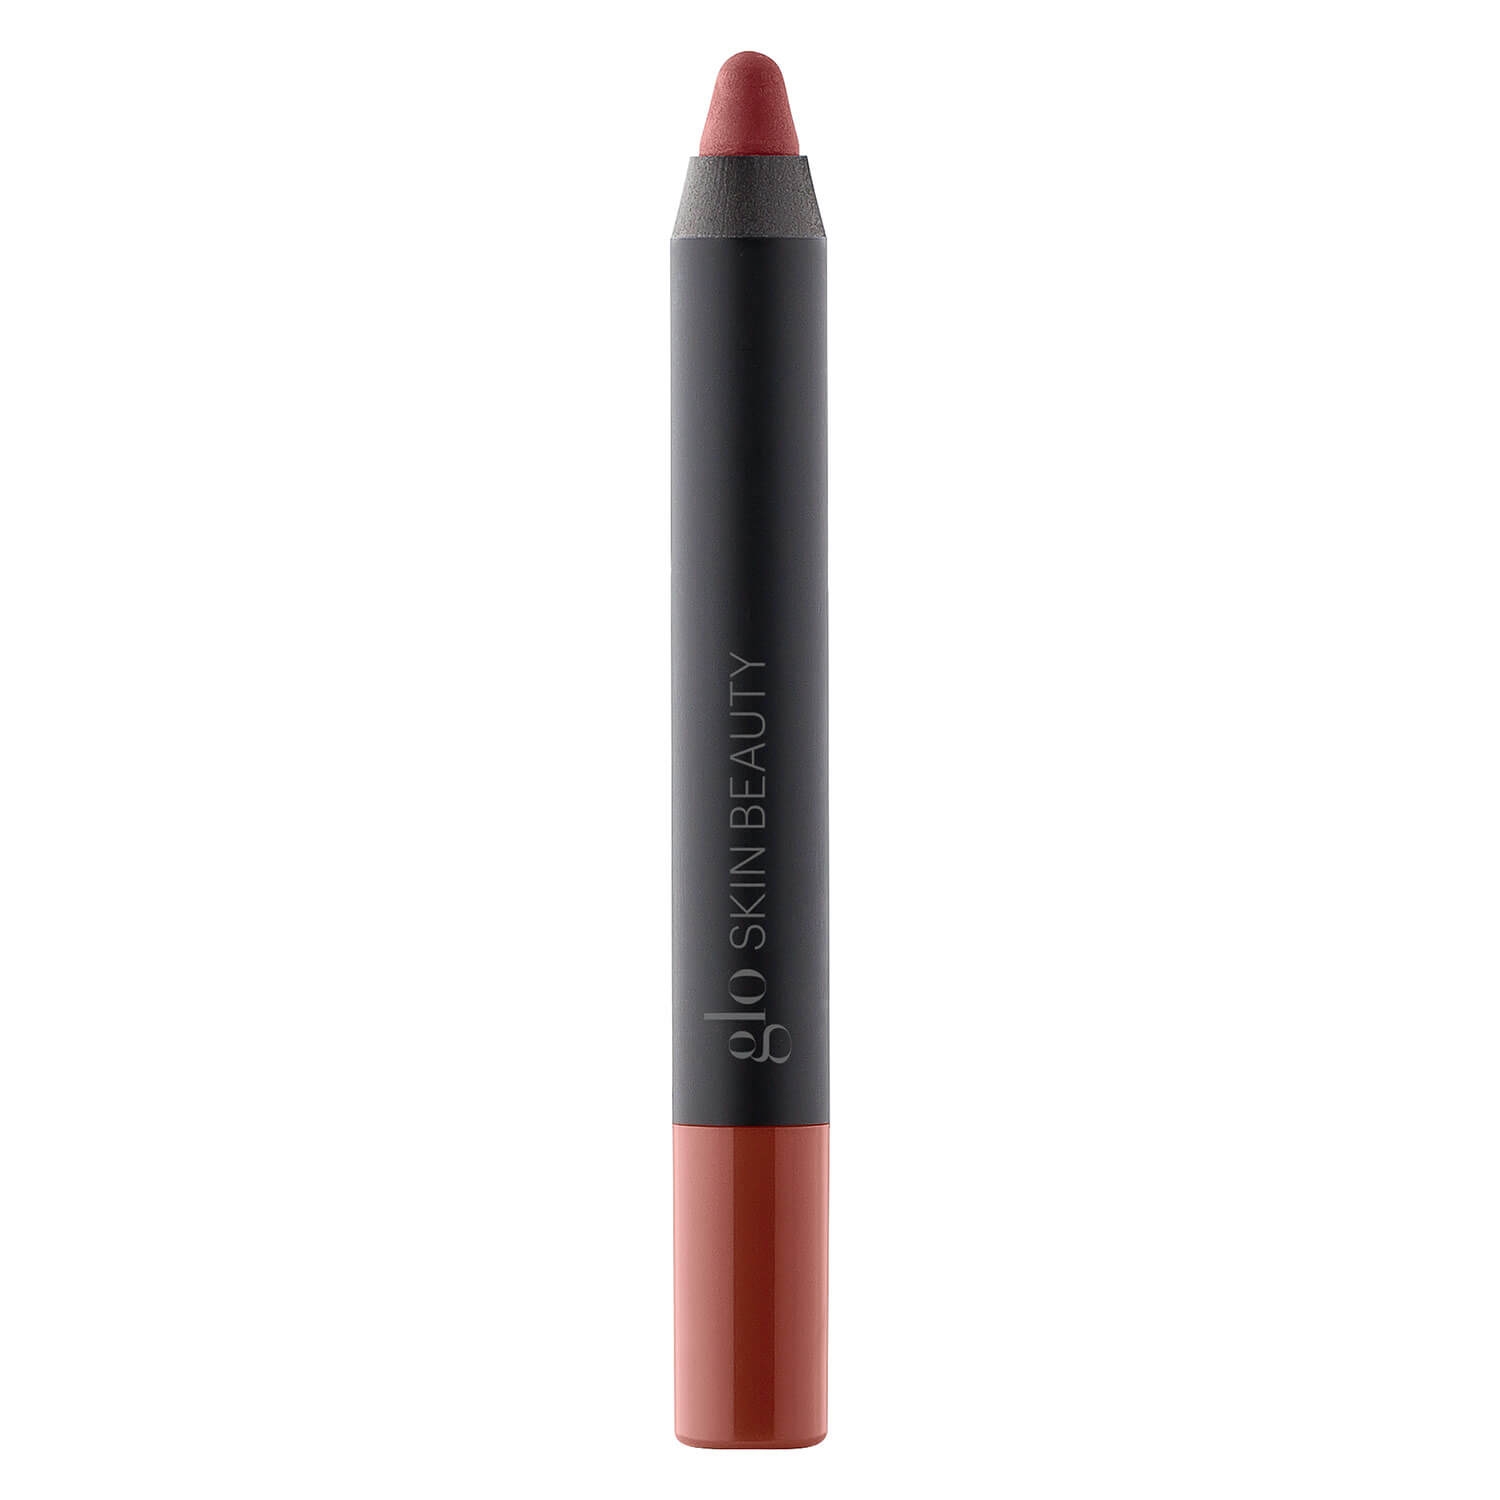 Produktbild von Glo Skin Beauty Lip Pencil - Suede Matte Crayon Trademark